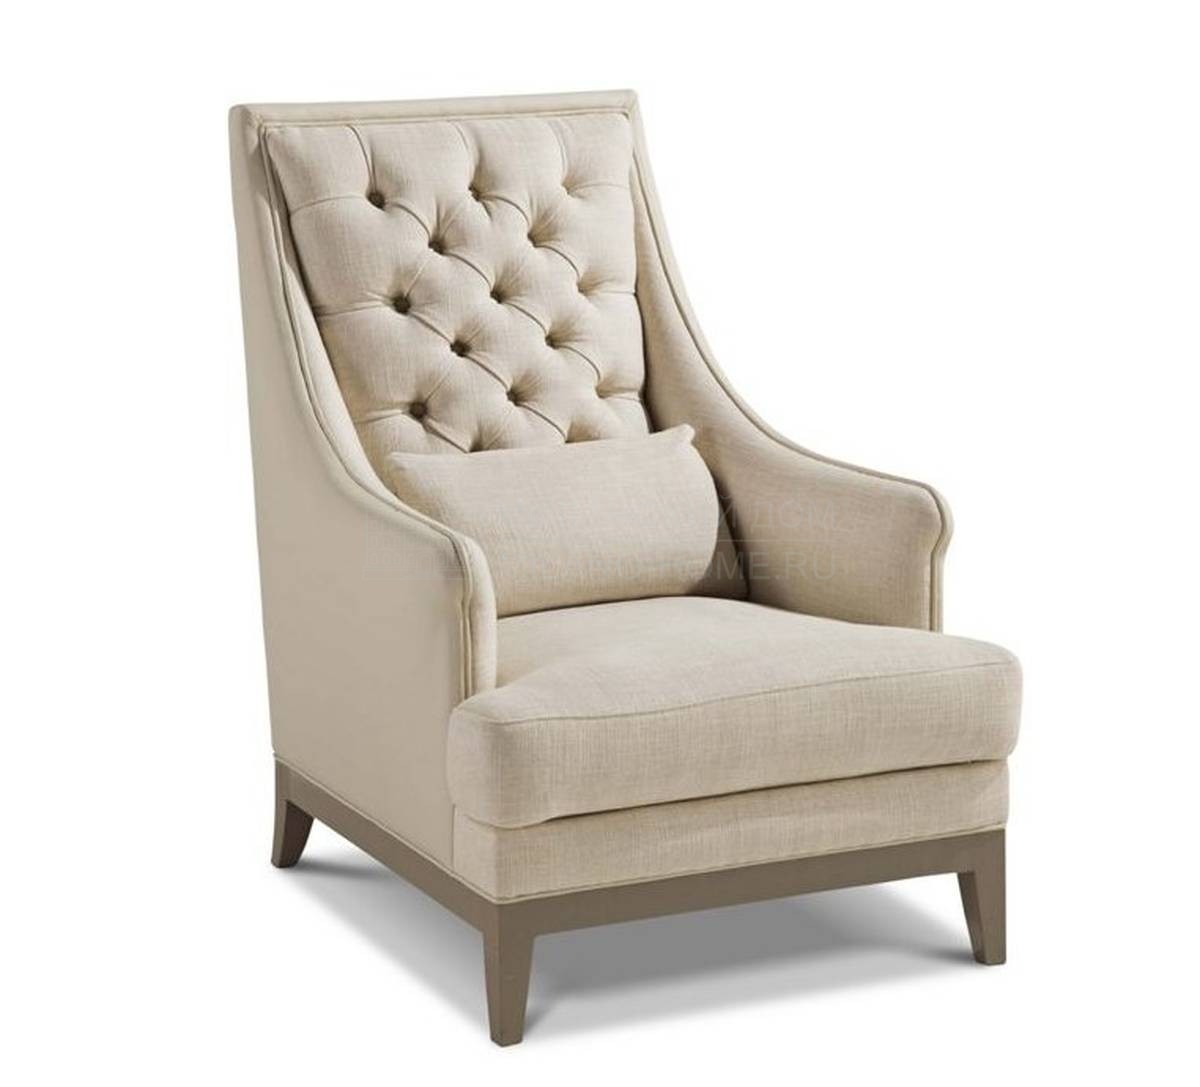 Кресло Epoq armchair due из Франции фабрики ROCHE BOBOIS